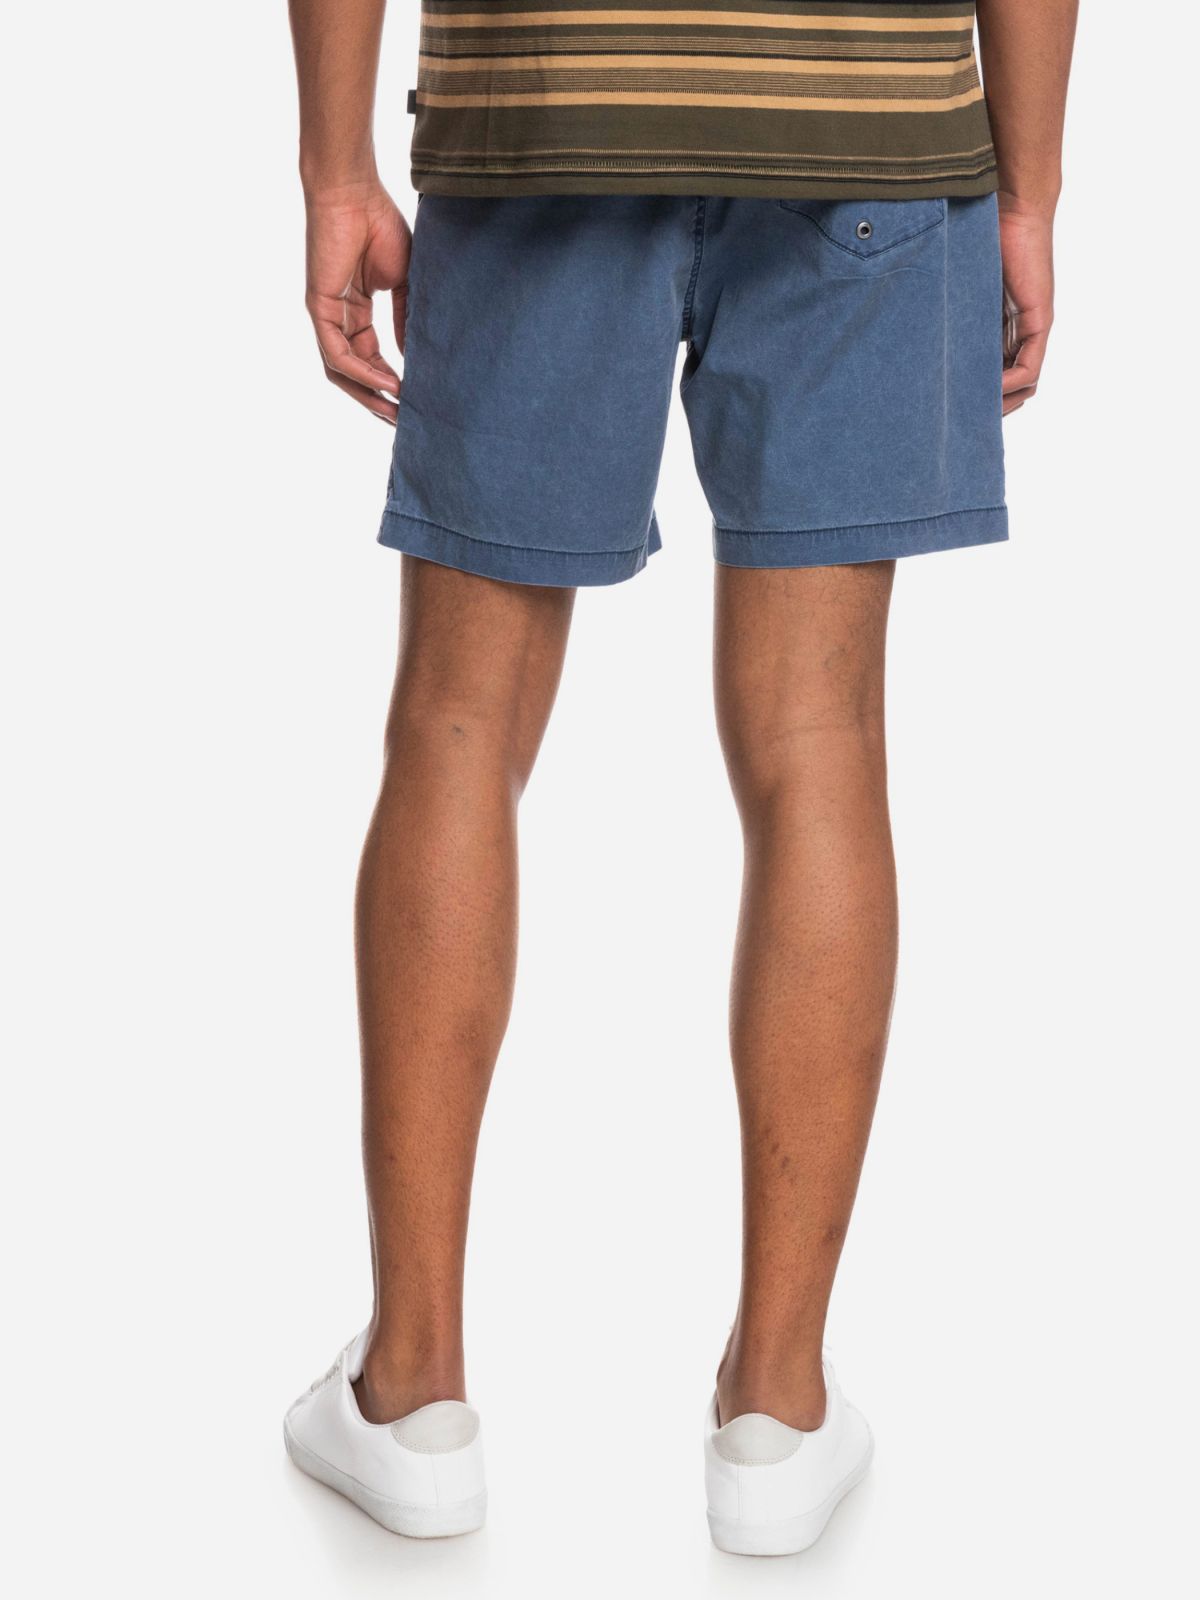  מכנסיים קצרים עם לוגו של QUIKSILVER